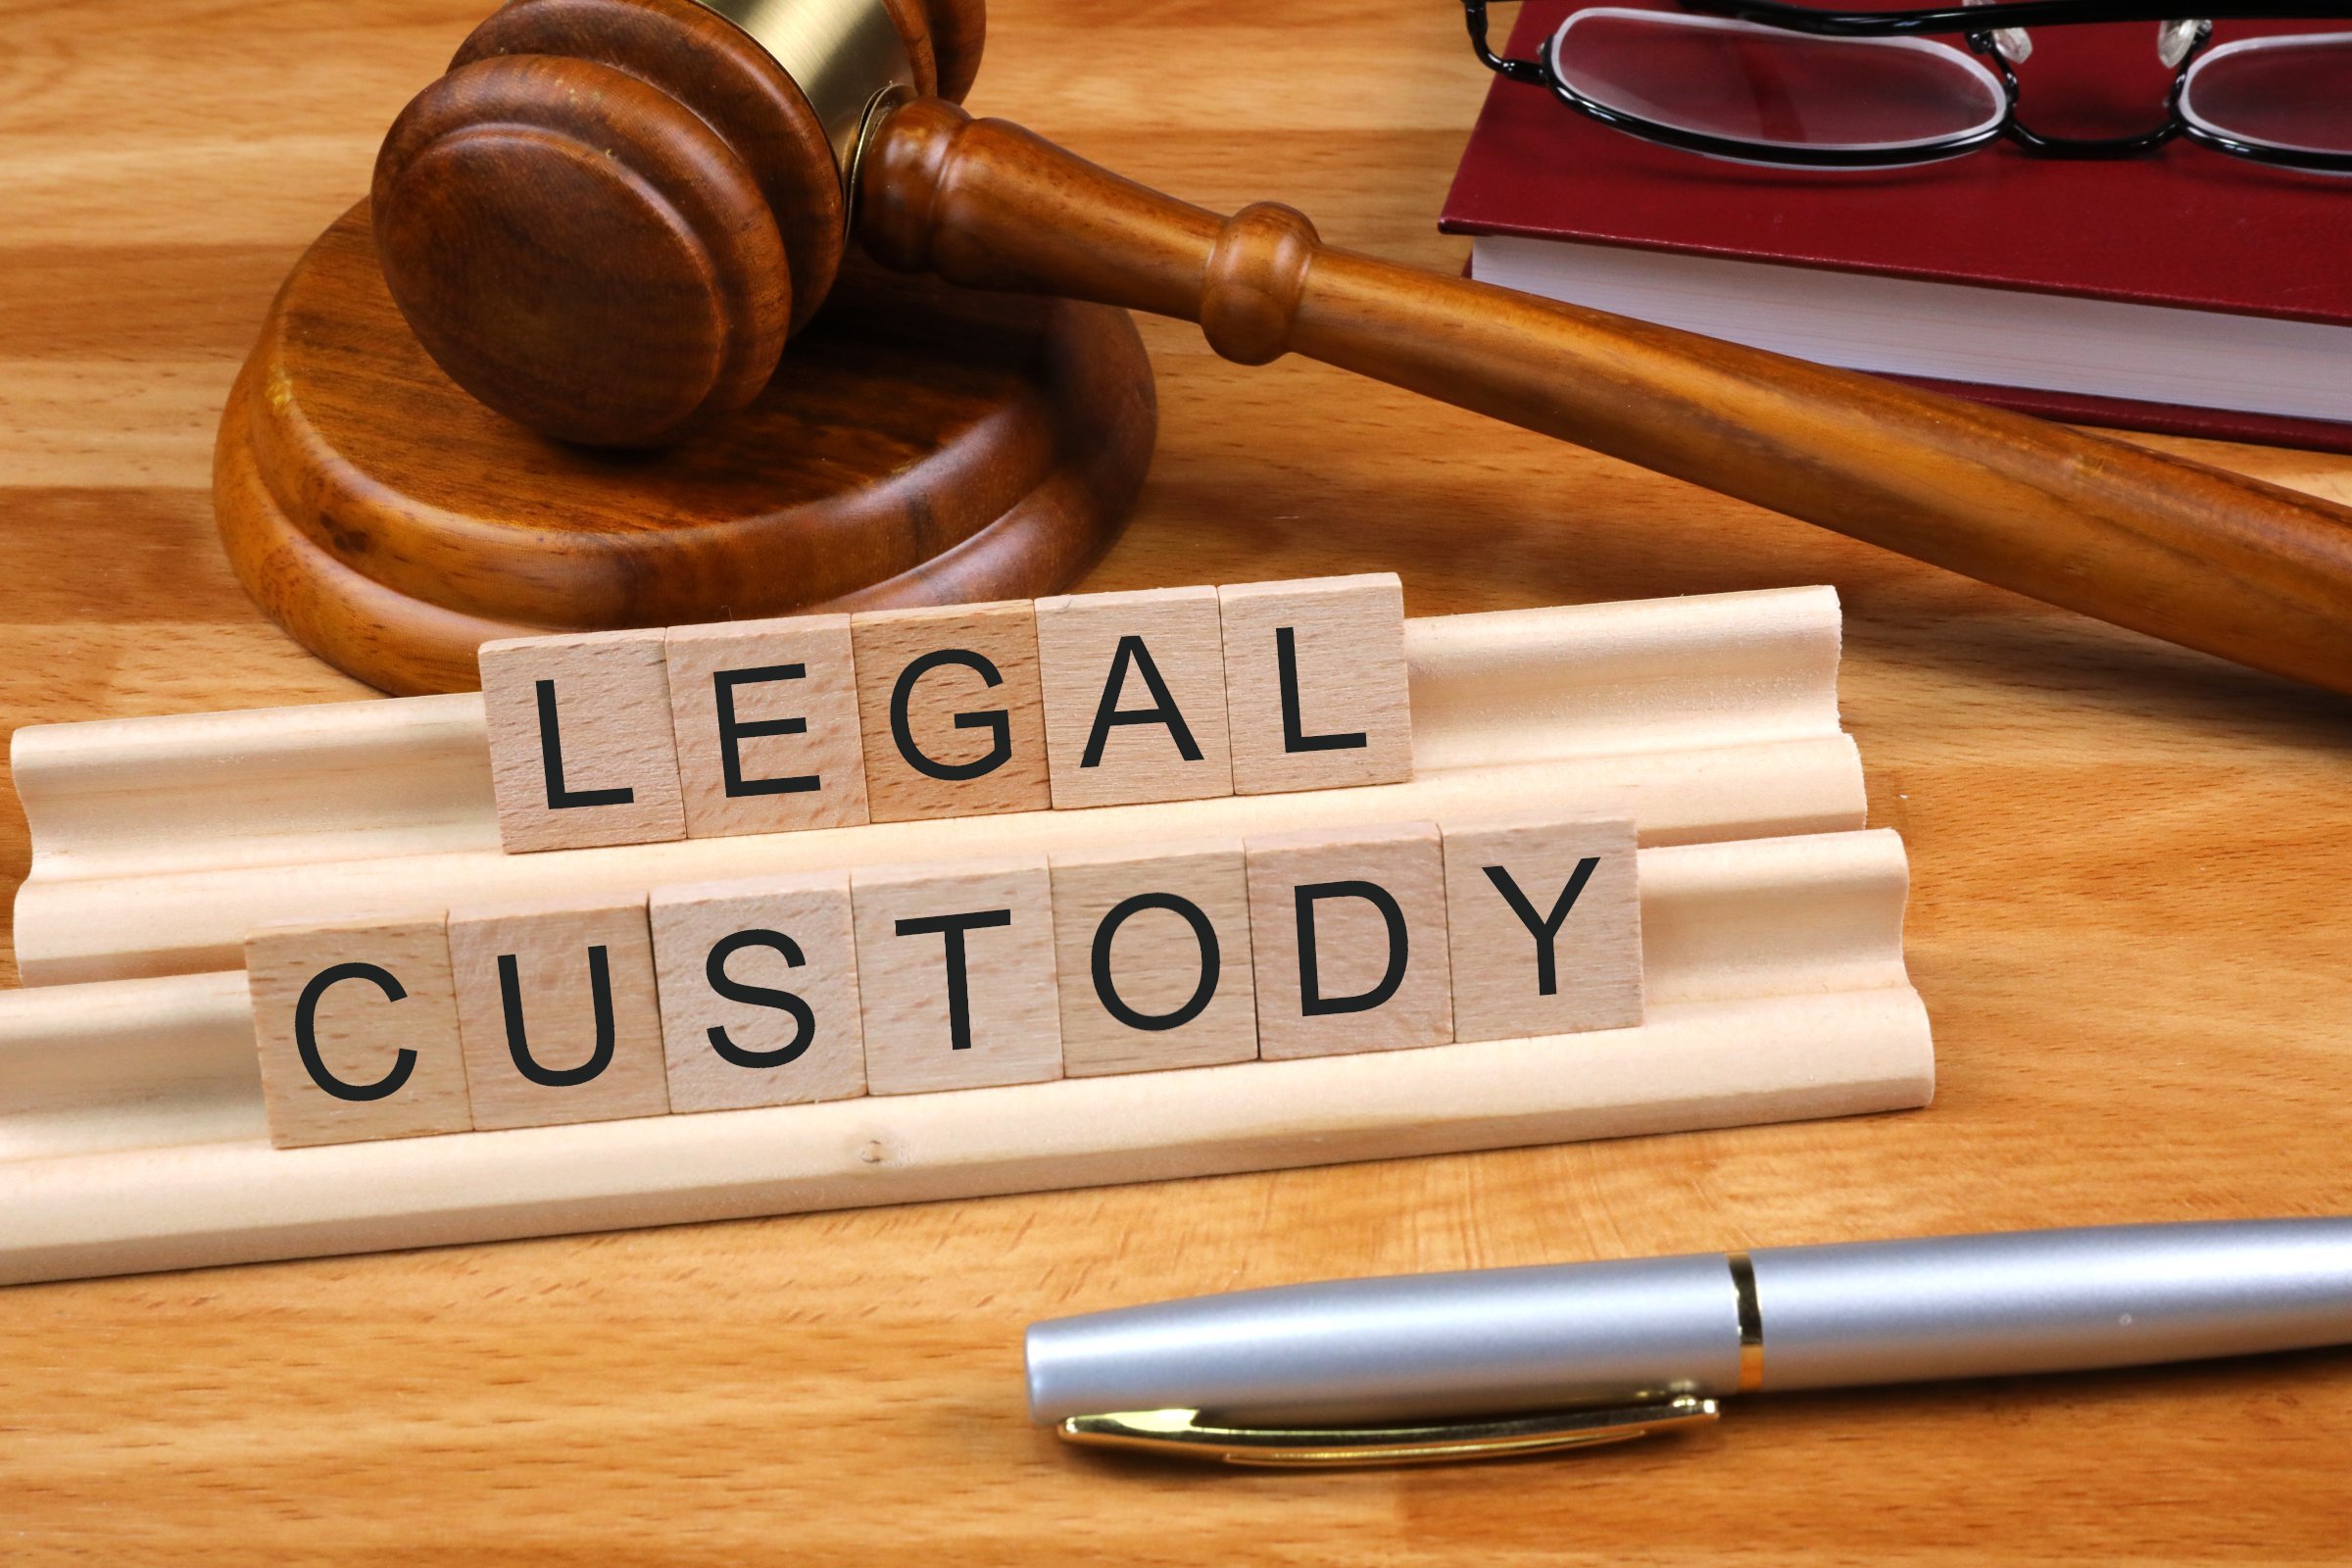 Legal Custody